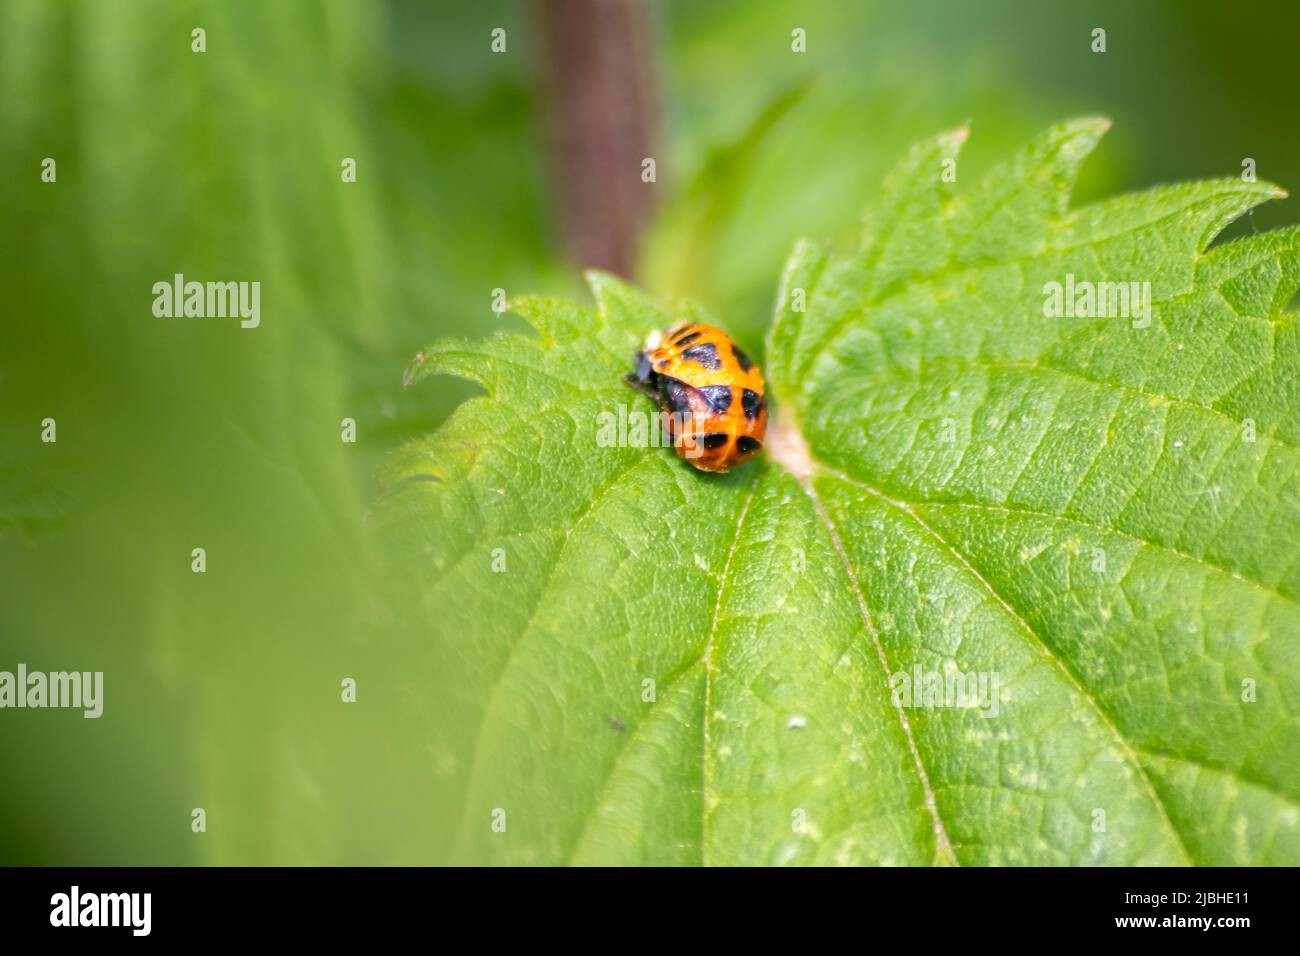 Ladybug recién nacido en una hoja verde como cambio de larva a escarabajo mariquita con puntos negros en sus alas rojas muestran el nuevo talismán afortunado nacido Foto de stock